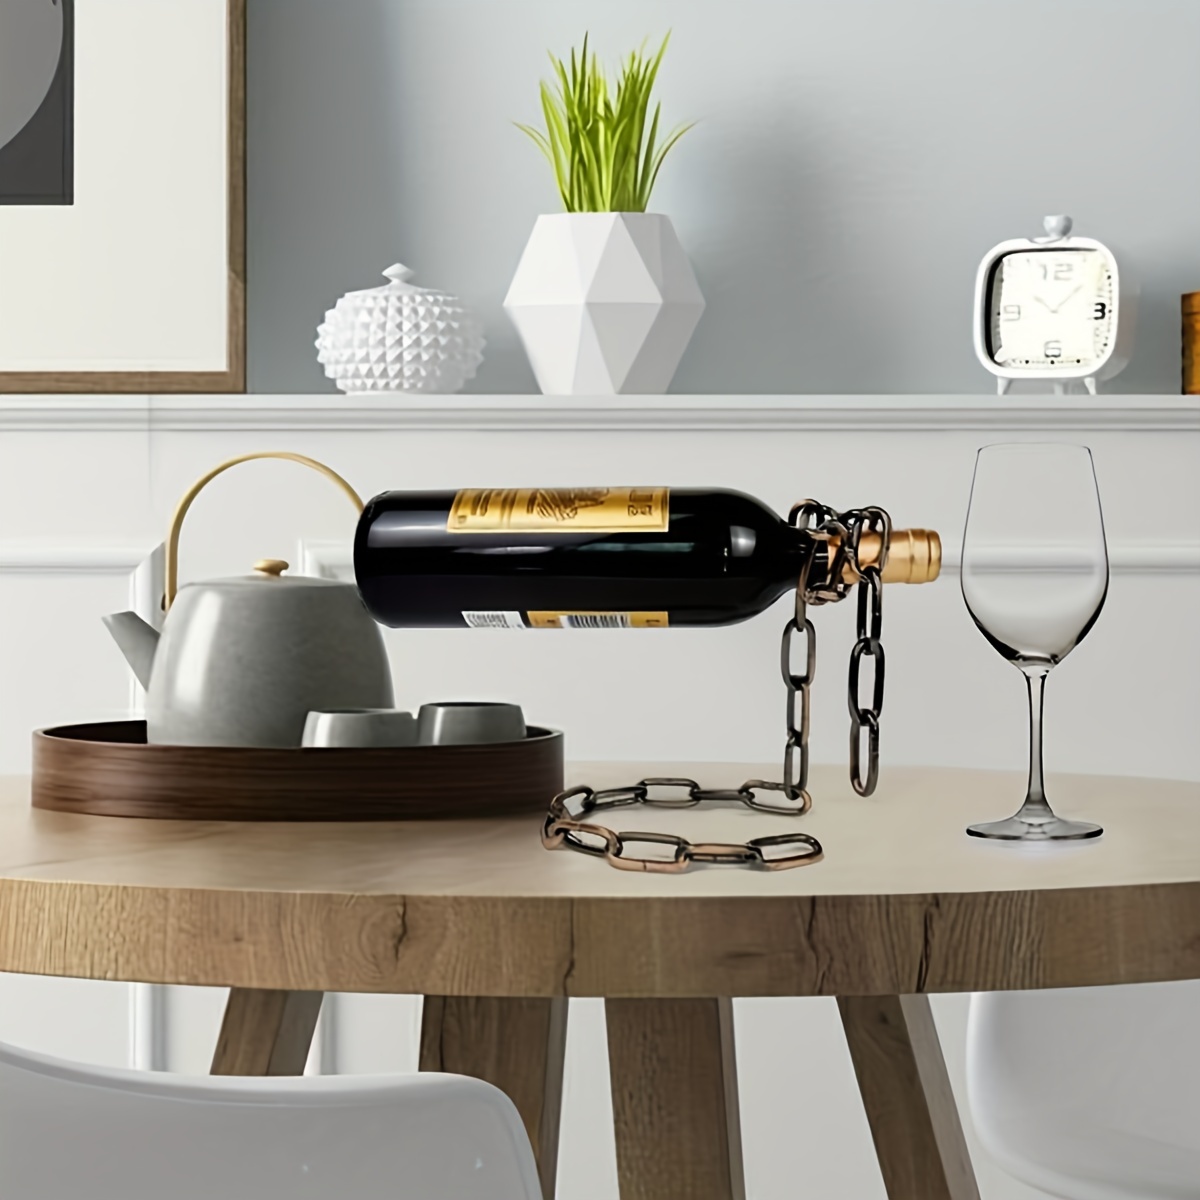 porta botellas de vino vinos porta copas cosas para el hogar la cocina  moderno